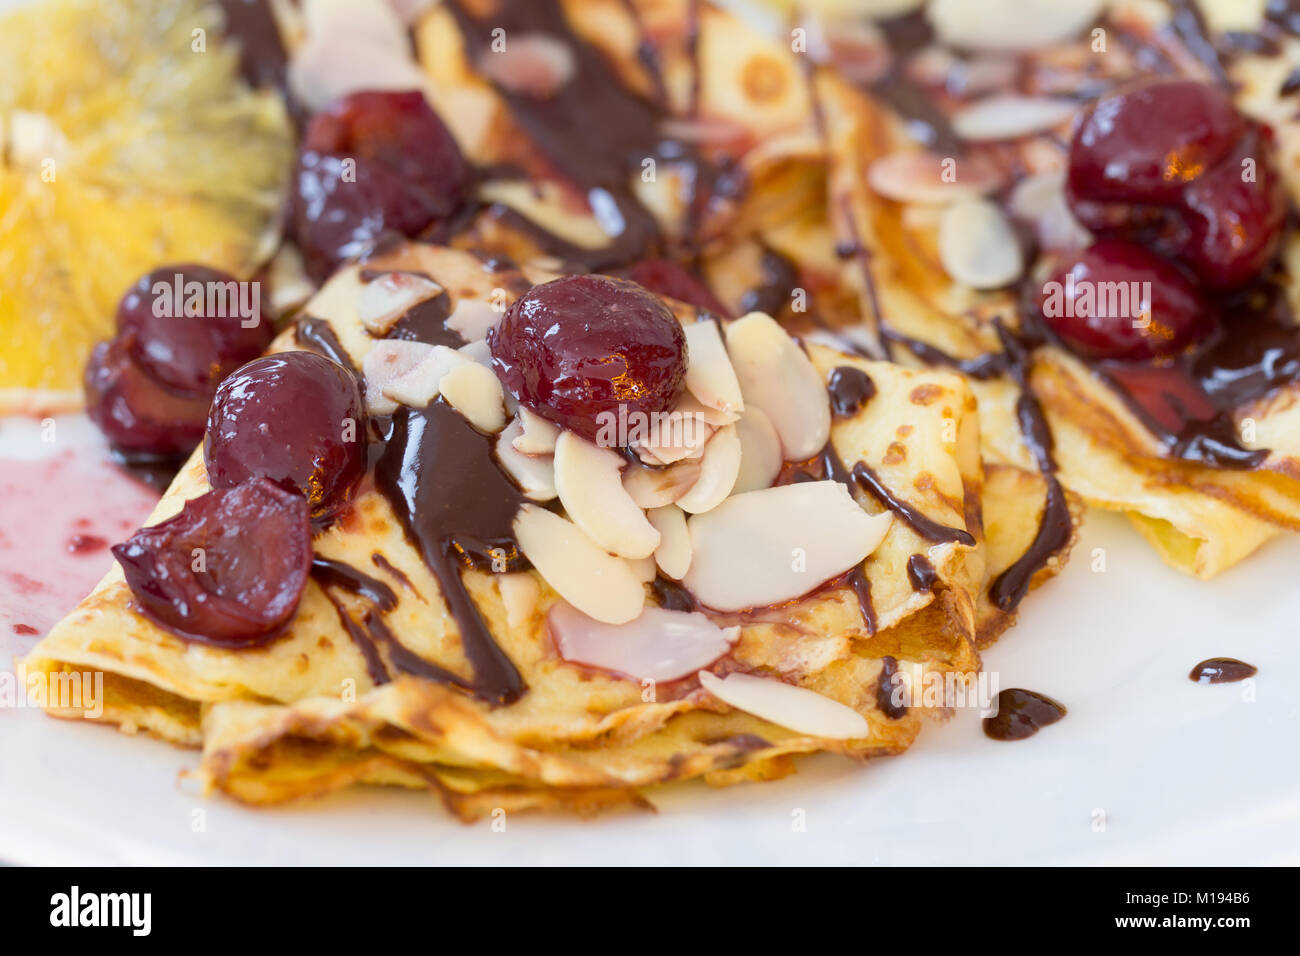 fruit and chocolate pancakes closeup Stock Photo